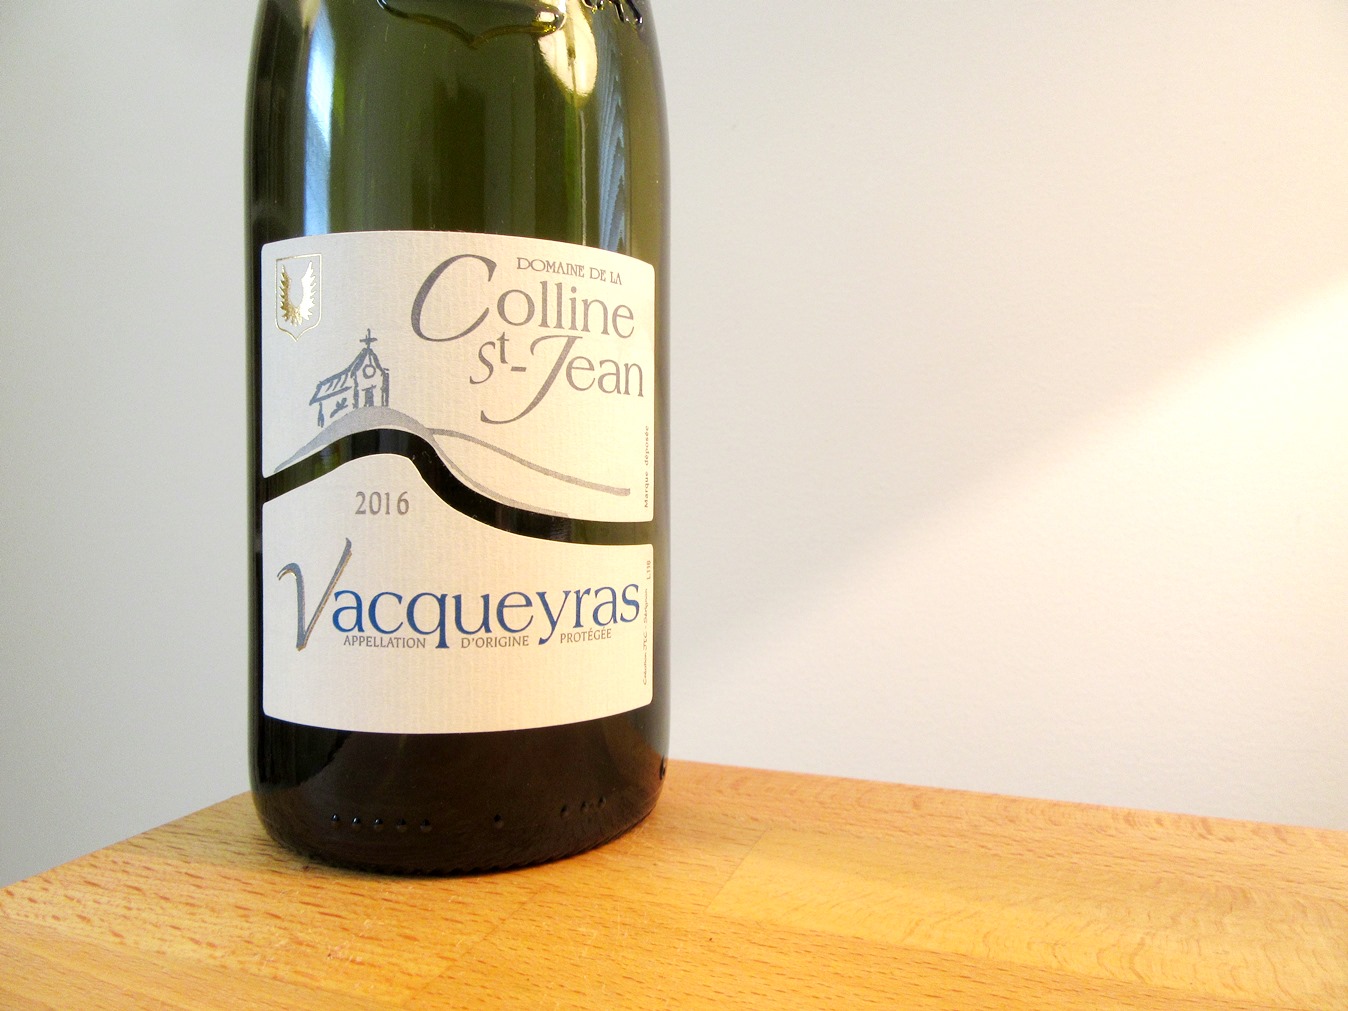 Domaine de la Colline St. Jean, Vacqueyras 2016, Rhone, France, Wine Casual